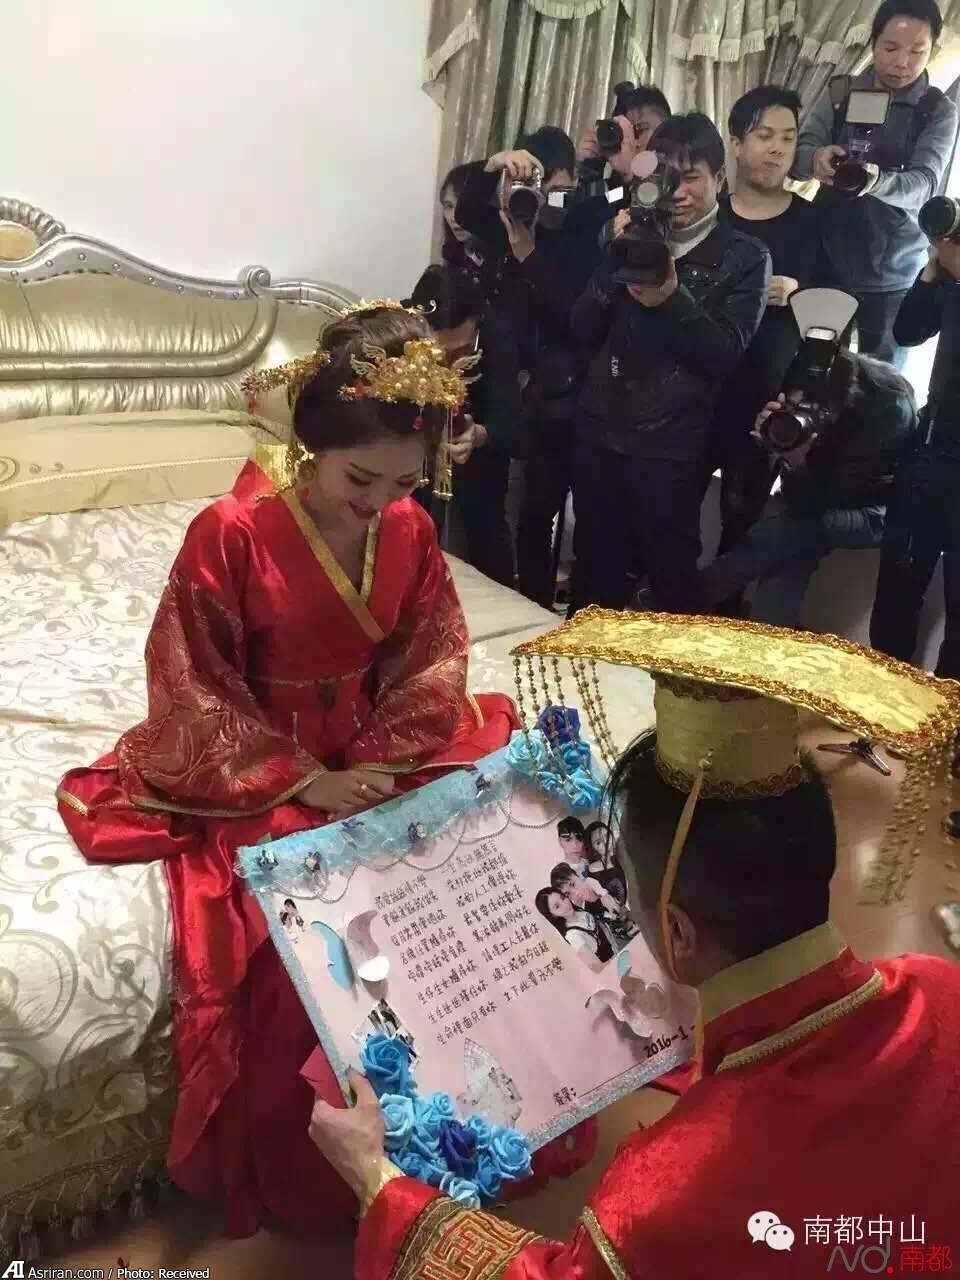 عکس عروسی عکس عروس عروسی پولدارها عروس زیبا شب عروسی اخبار چین